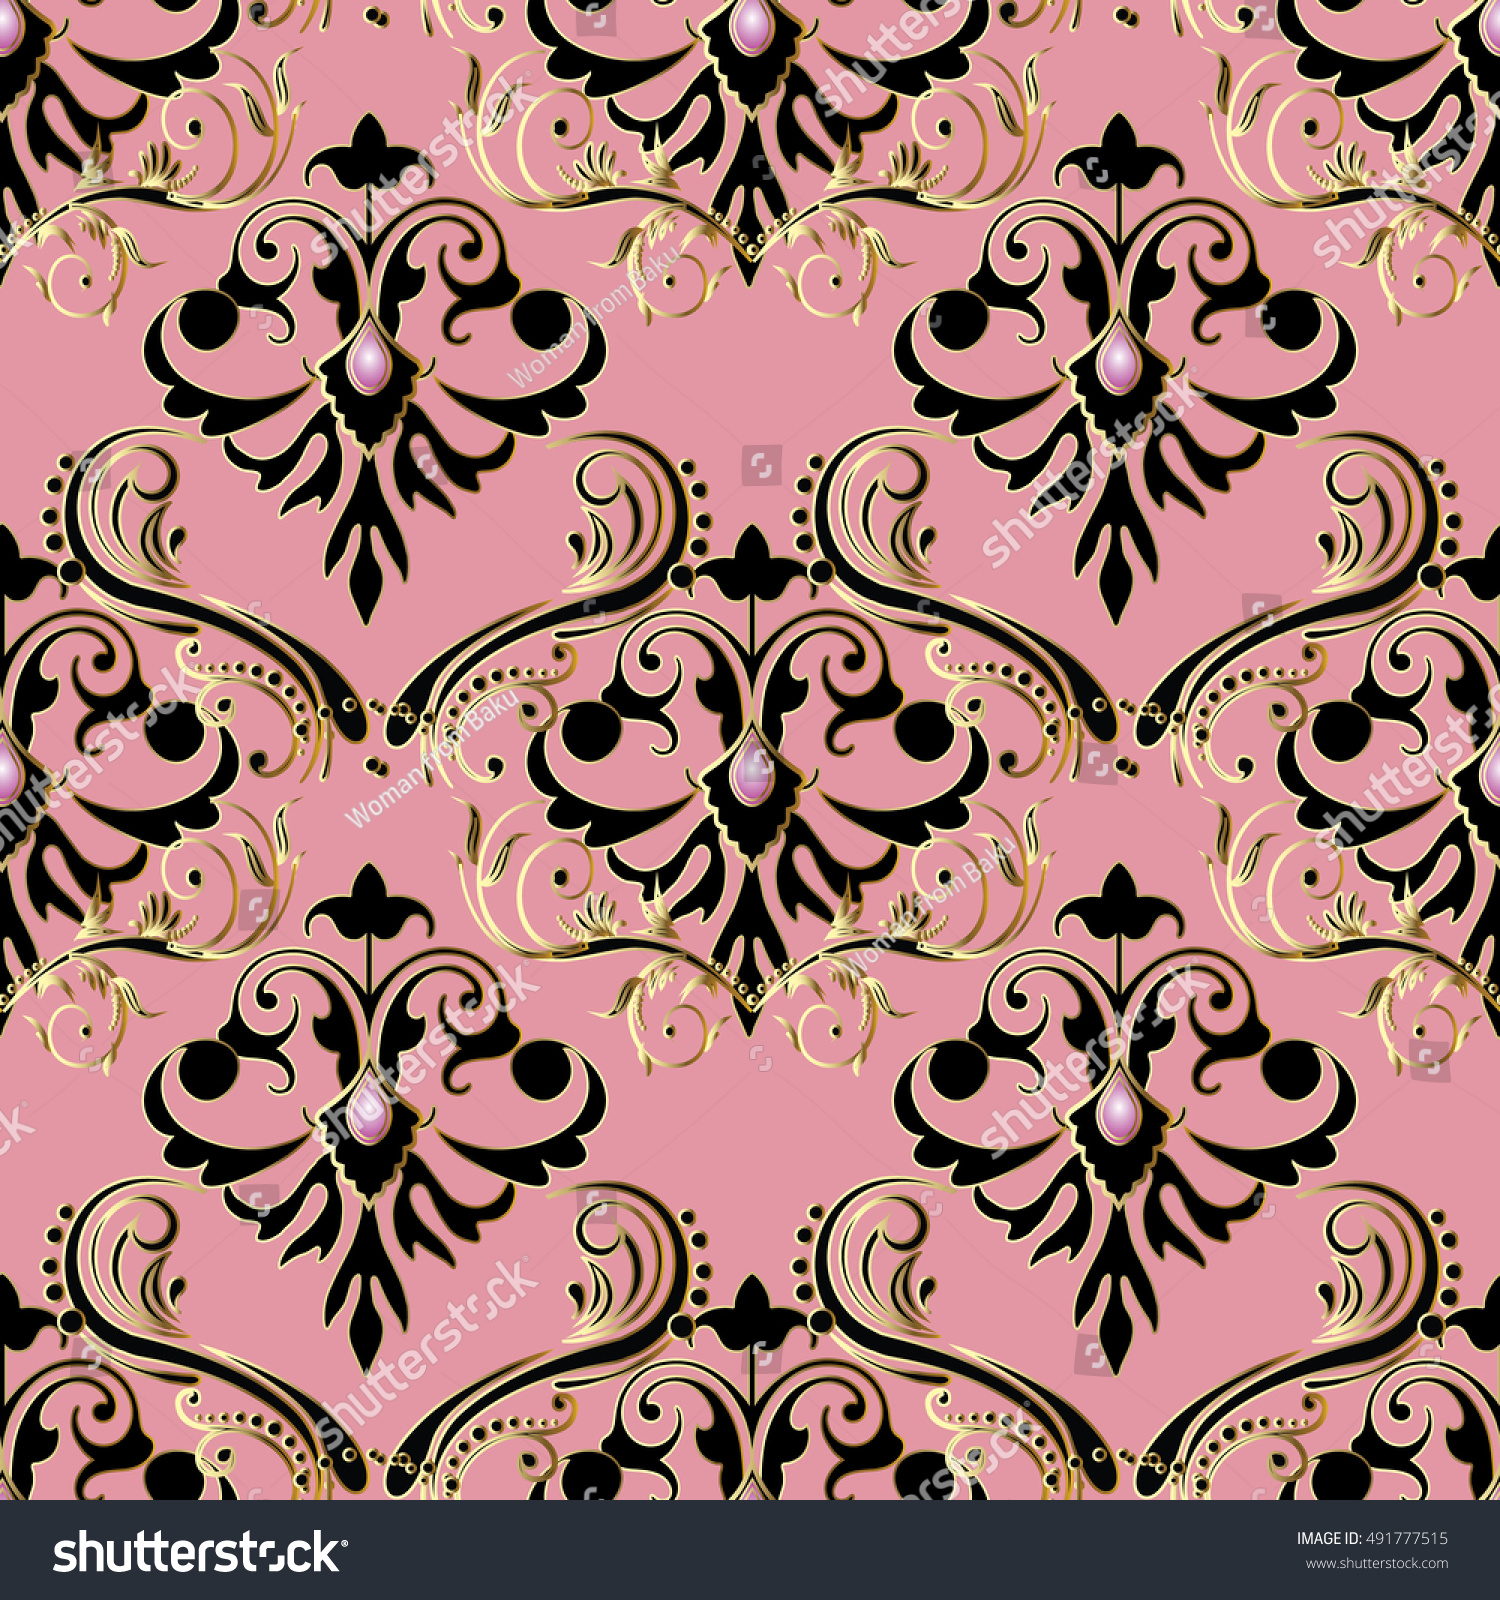 Royalty Free Elegant Light Pink Baroque Damask 491777515 Stock